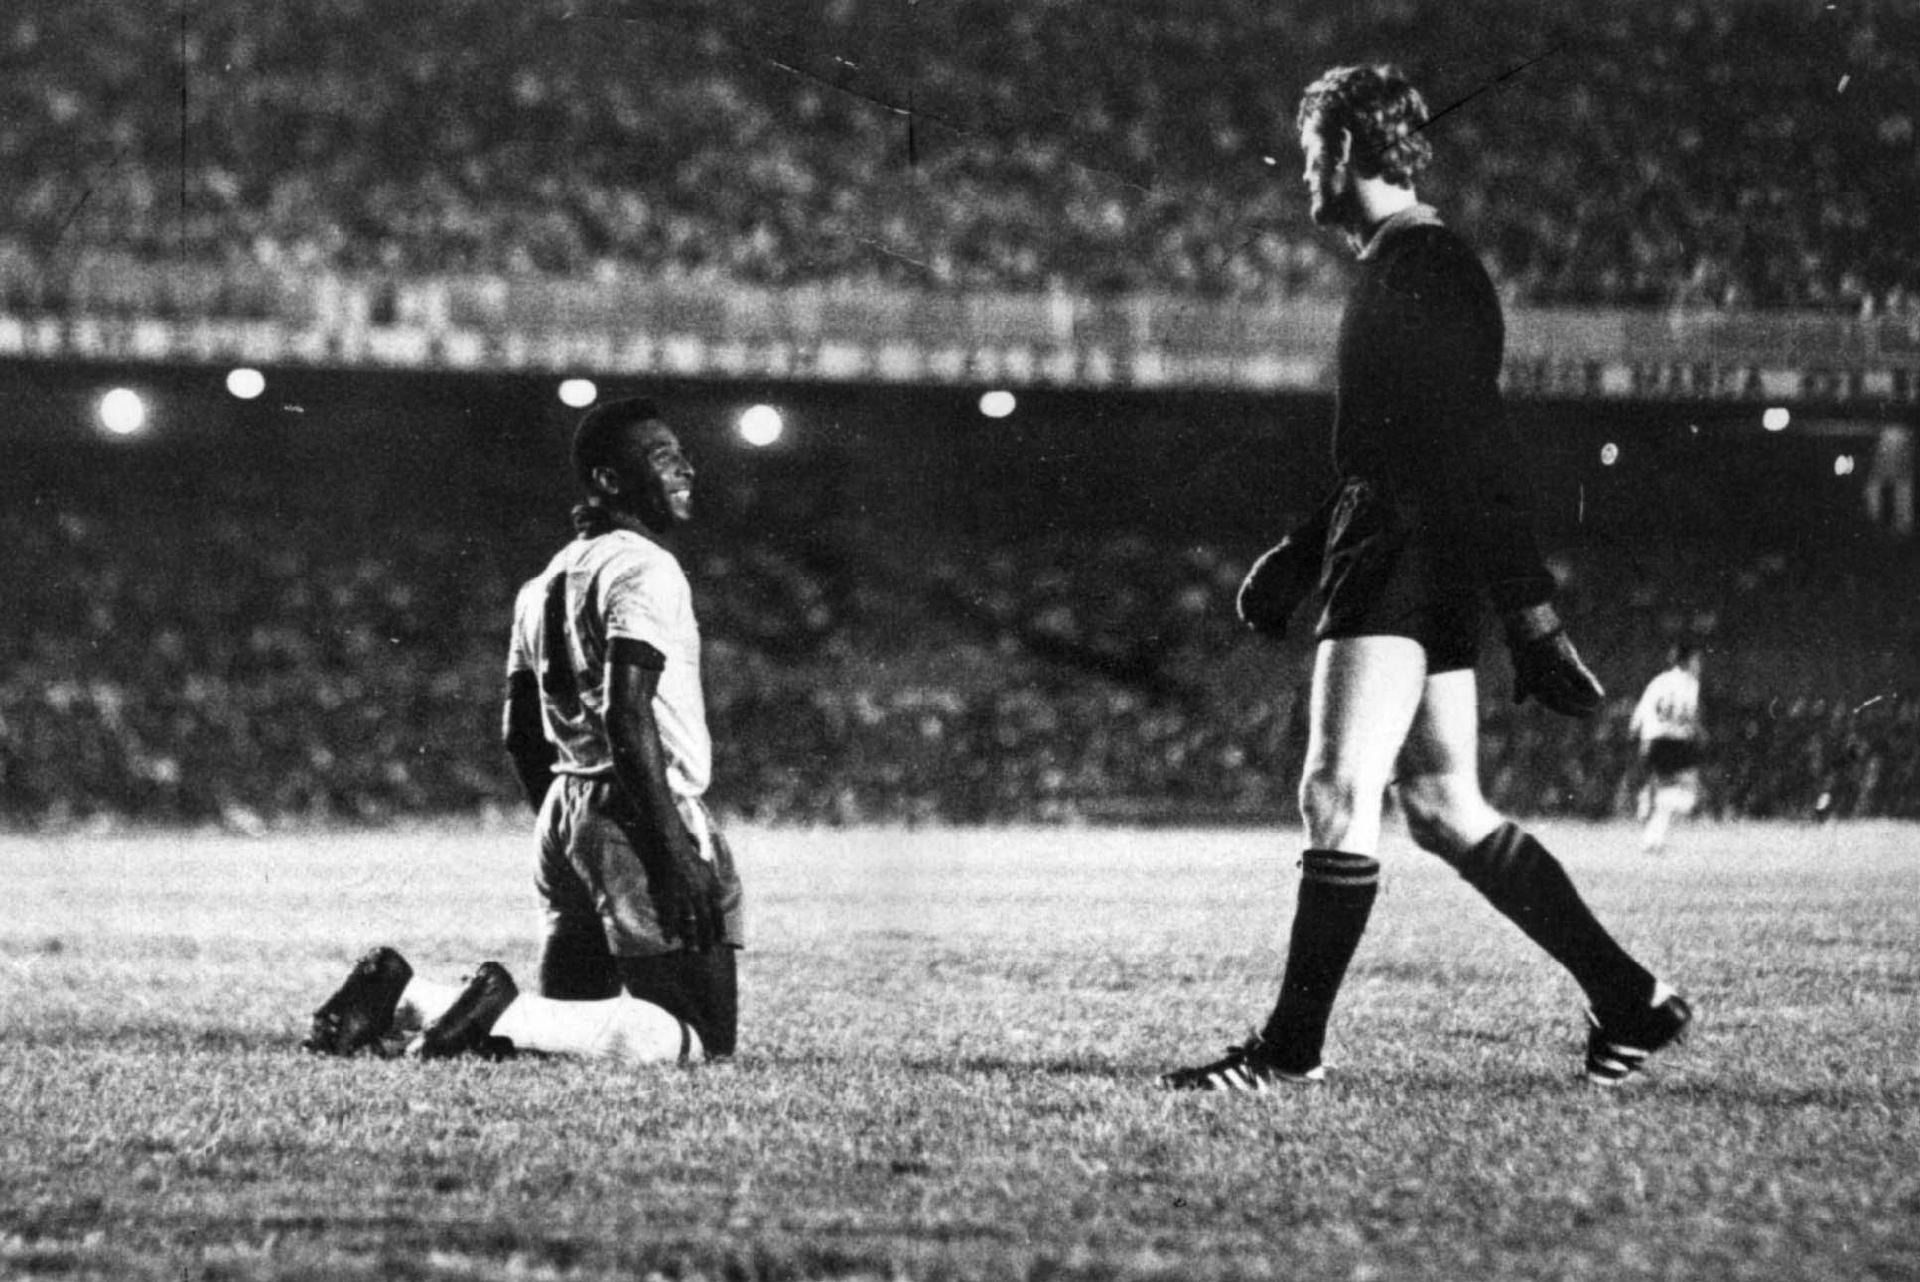 01/12/1969 - Ajoelhado no ataque, Pelé sorrir para o goleiro da seleção de minas durante amistoso da Seleção Brasileira. Preparando-se para a Copa do México, a Seleção venceu por 2 a 1, um dos gols foi marcado pelo camisa 10. - Estadão Conteúdo